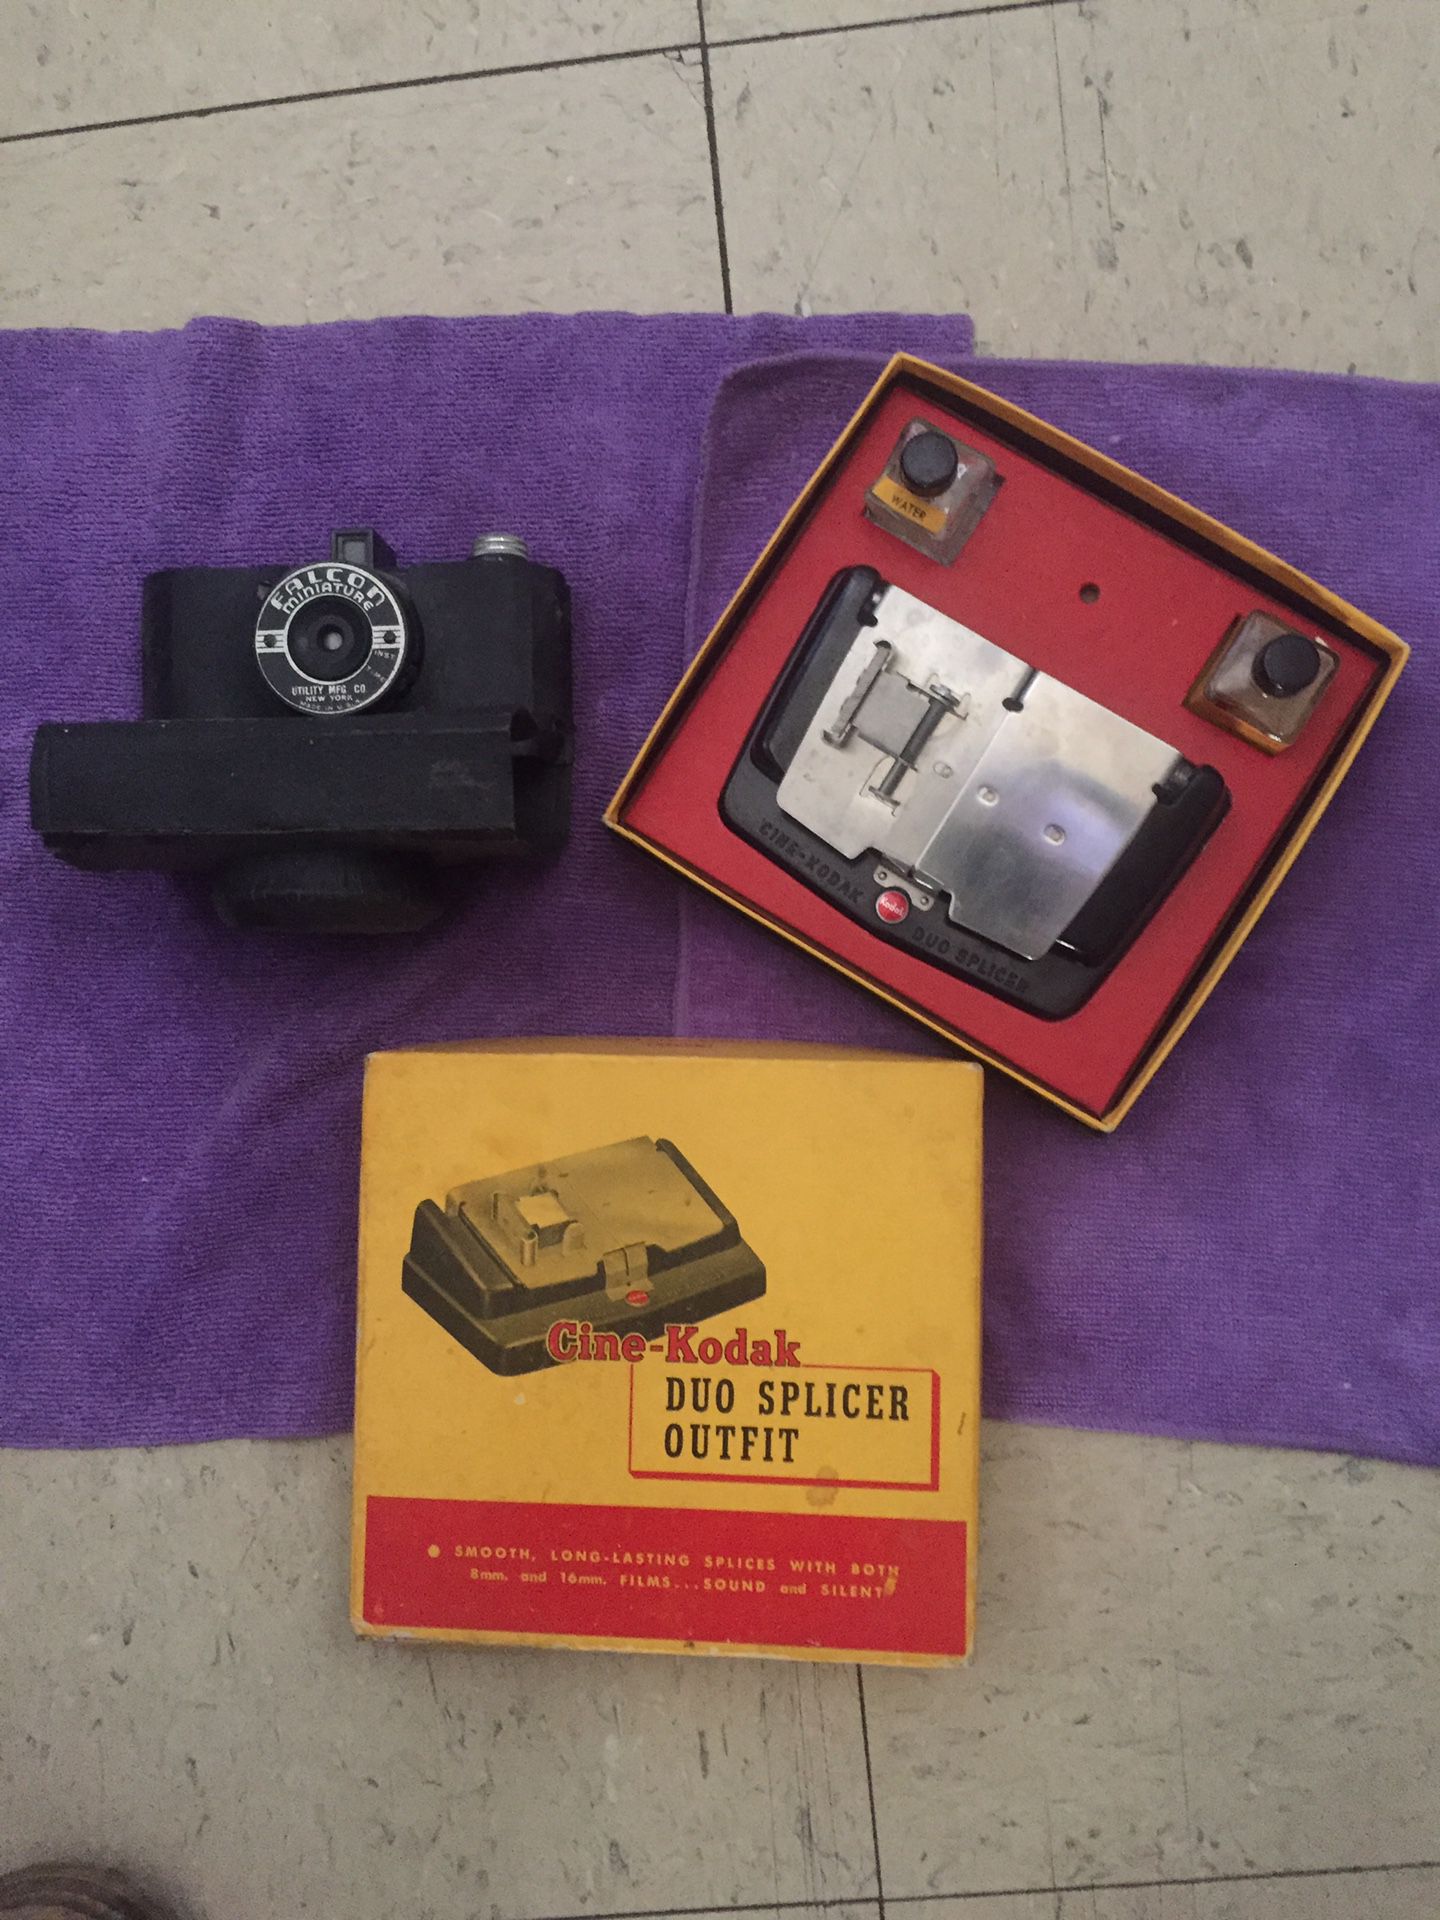 Antique camera and equipment